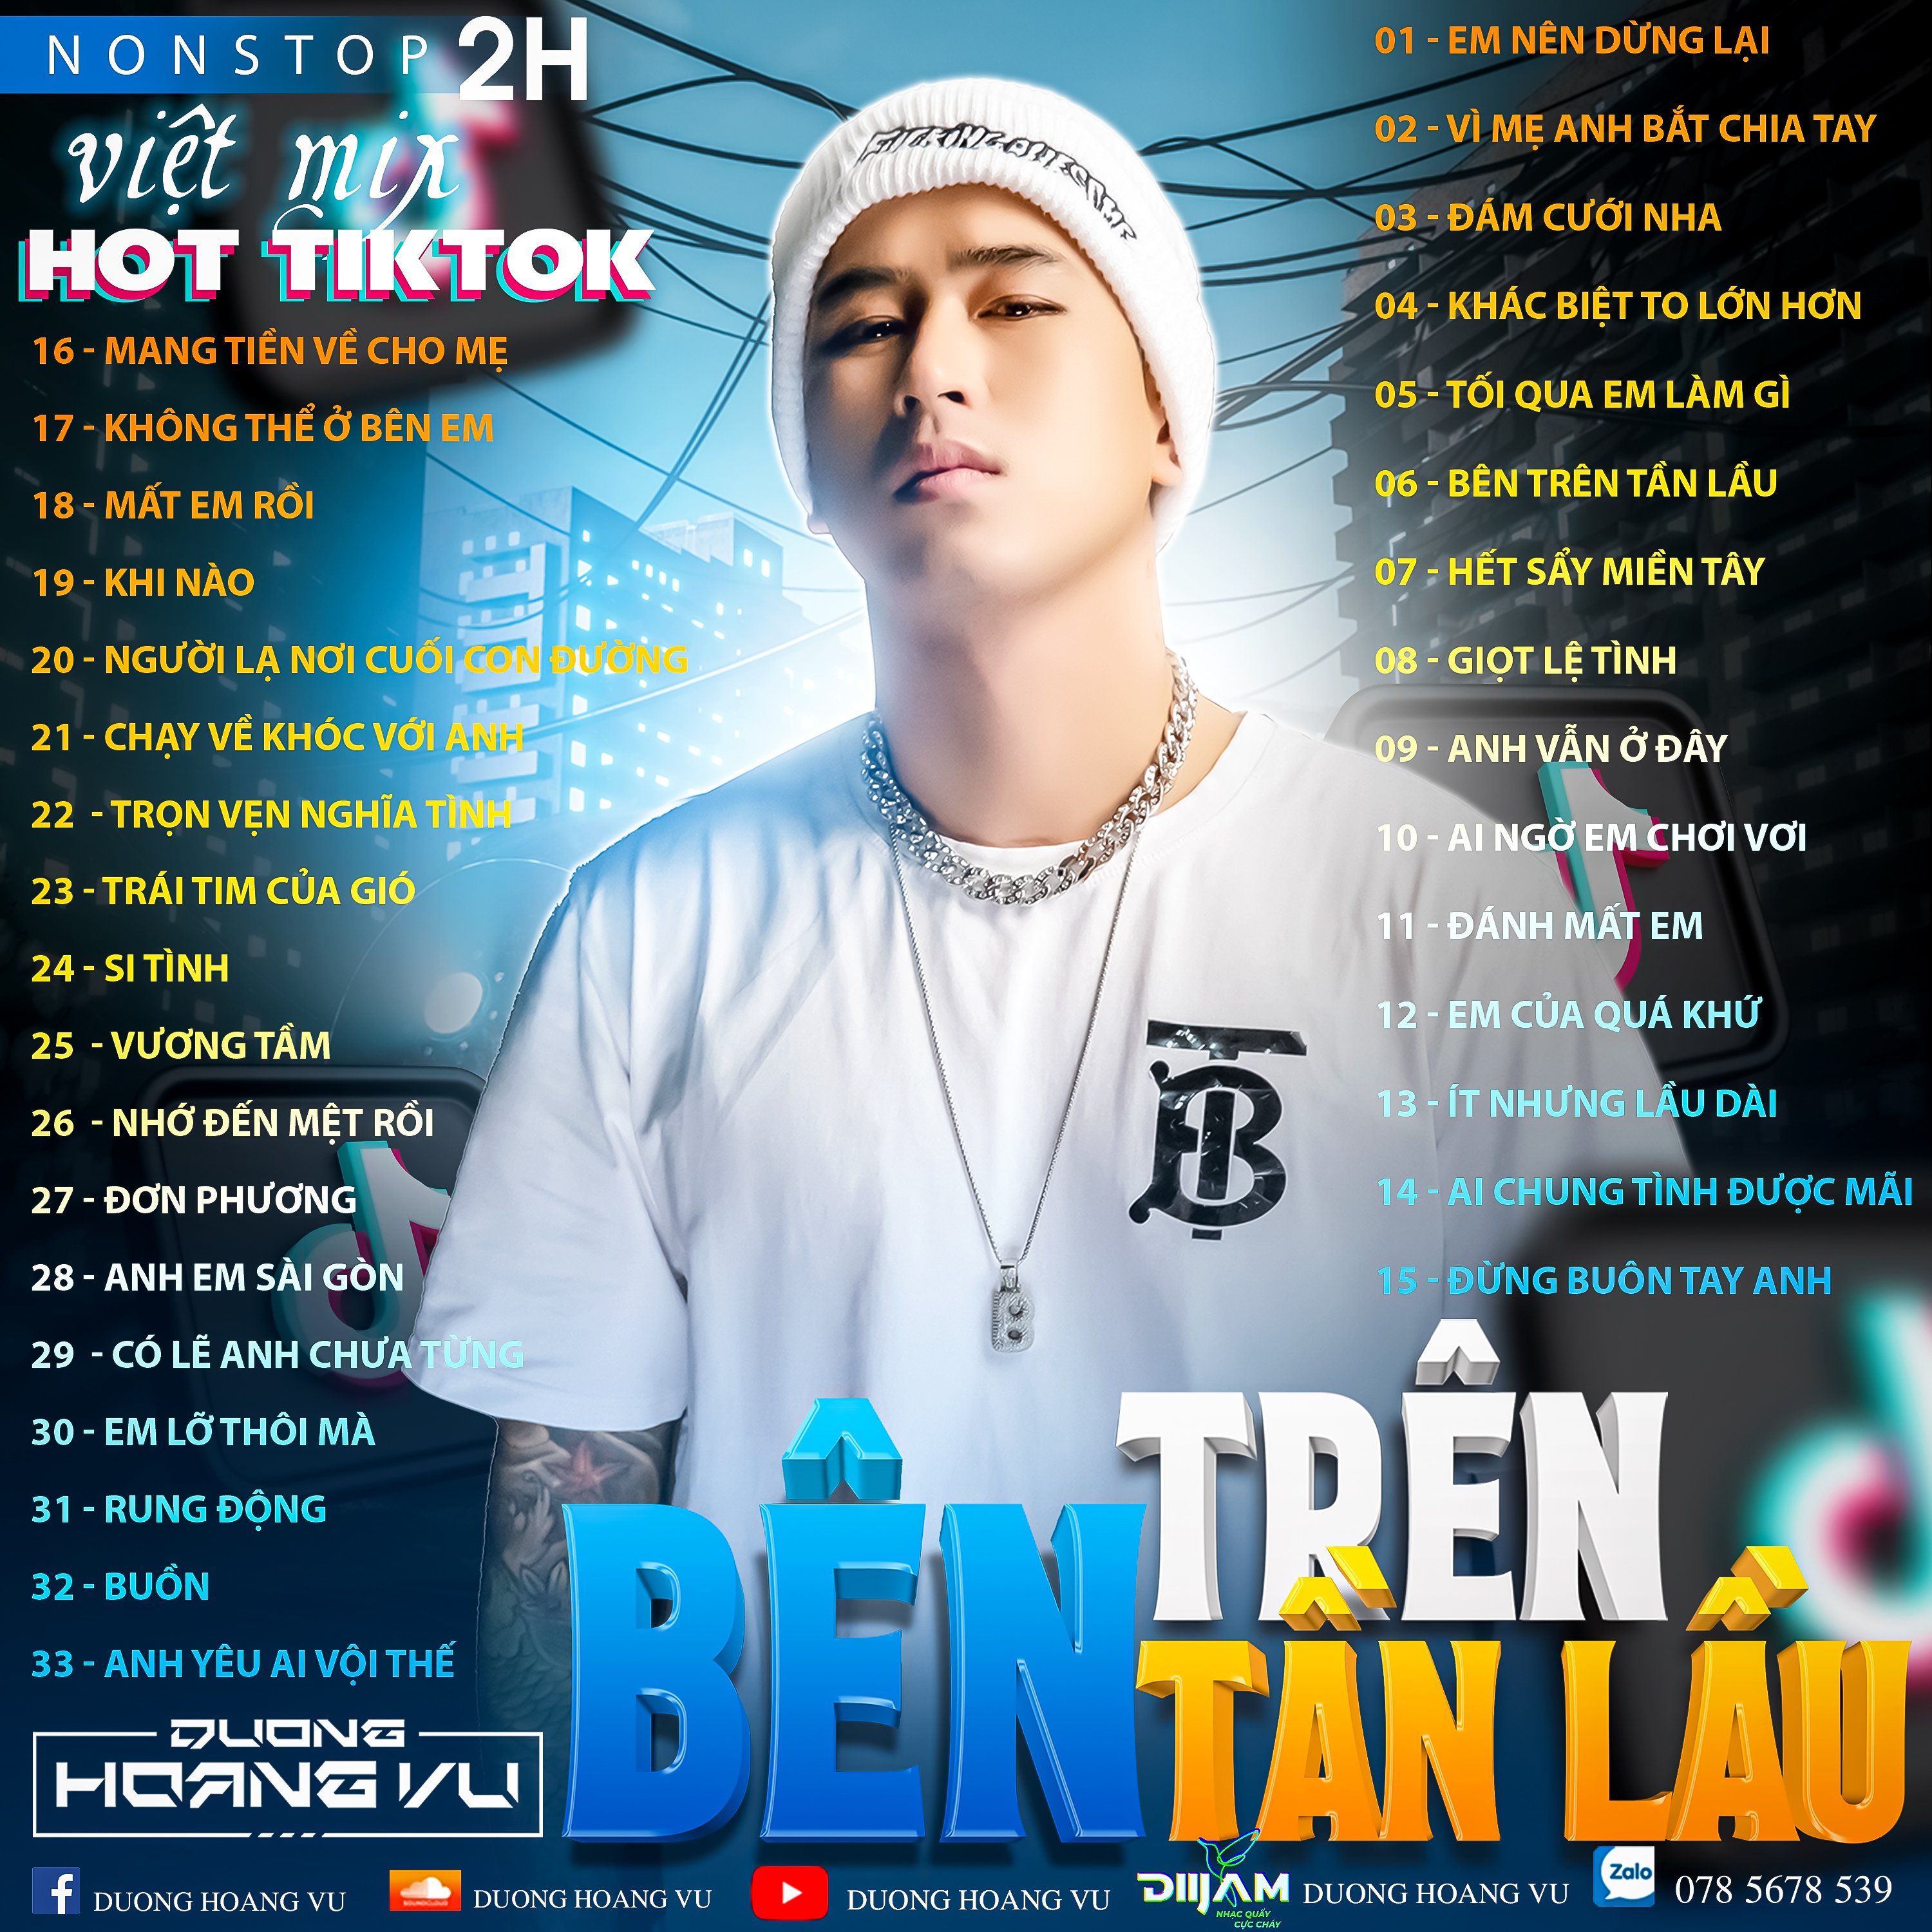 Prenesi (Demo ) Nst Việt Mix Hot tiktok 2h - 2022 - DJ Dương Hoàng Vũ Mix Mua Full IB Zalo 078.5678.539